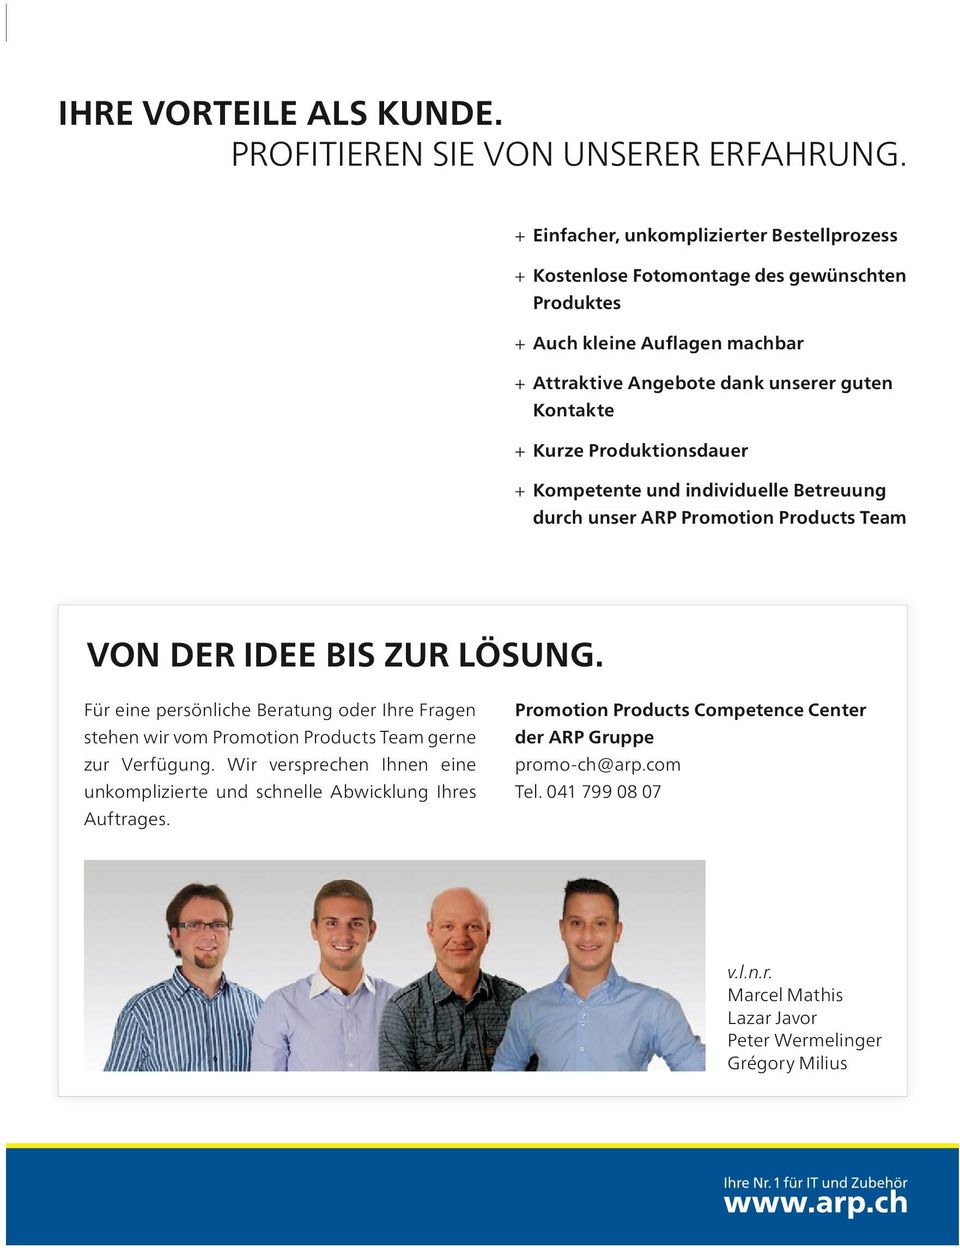 kurze produktionsdauer + kompetente und individuelle Betreuung durch unser arp promotion products team Von der idee Bis Zur lösung.